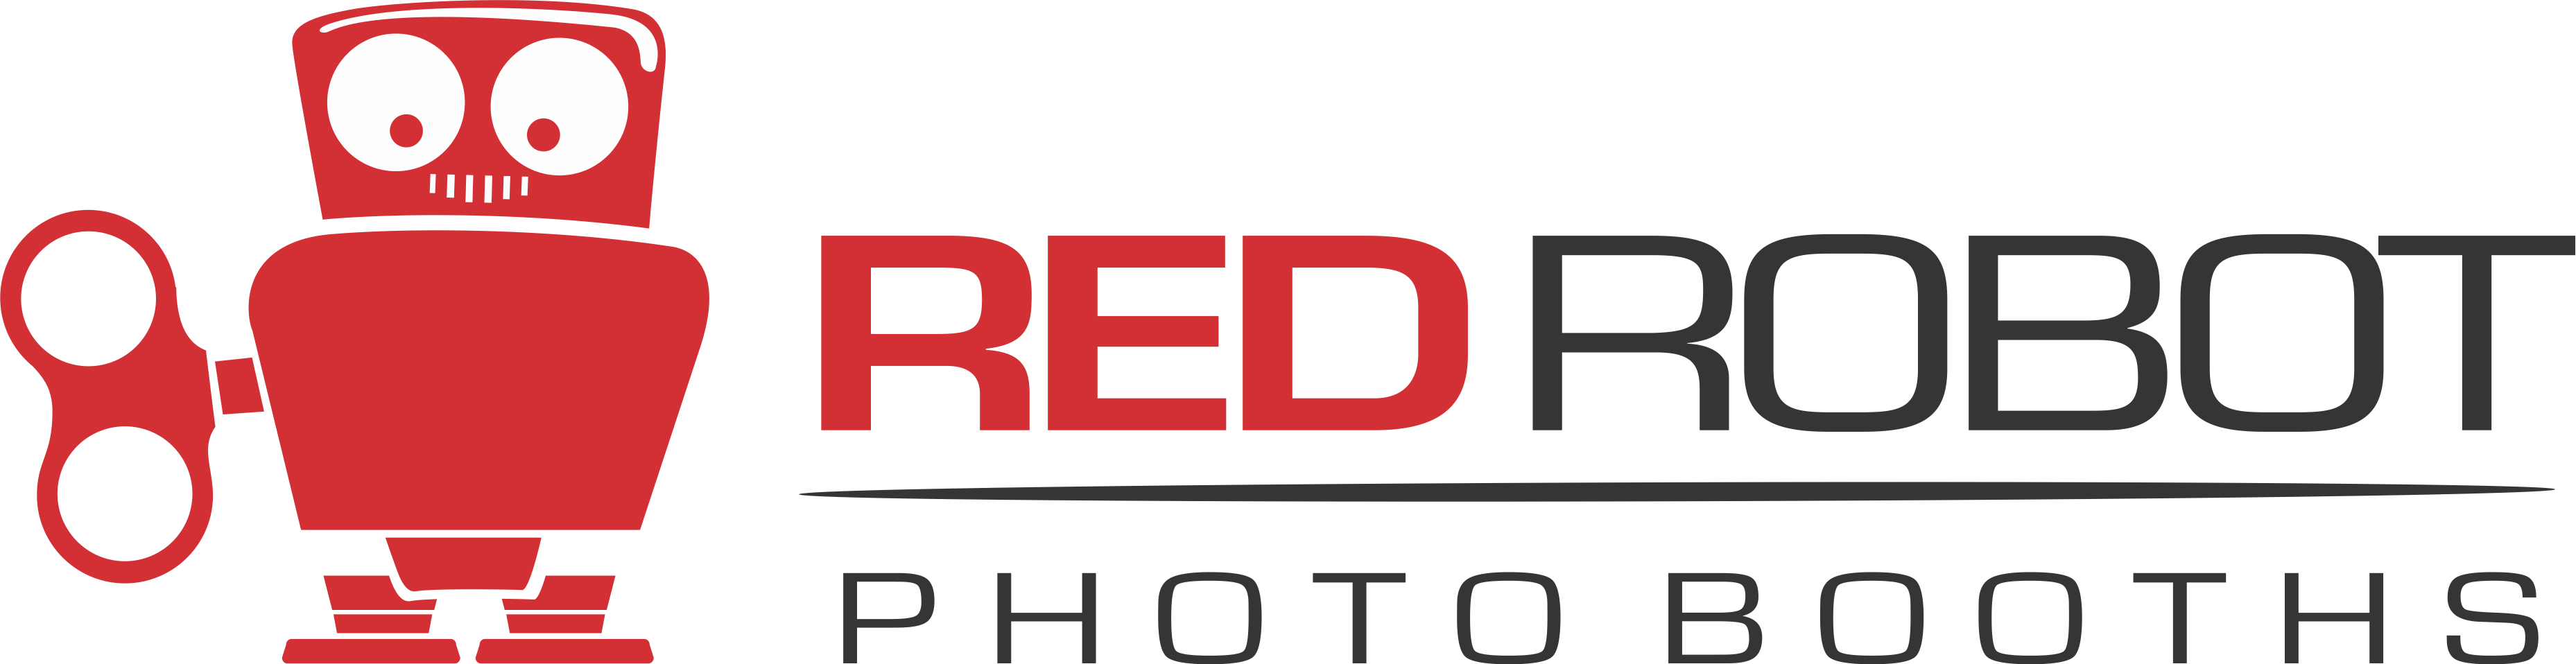 Red Robot Logo - Red Robot logo 2 | BoothCon